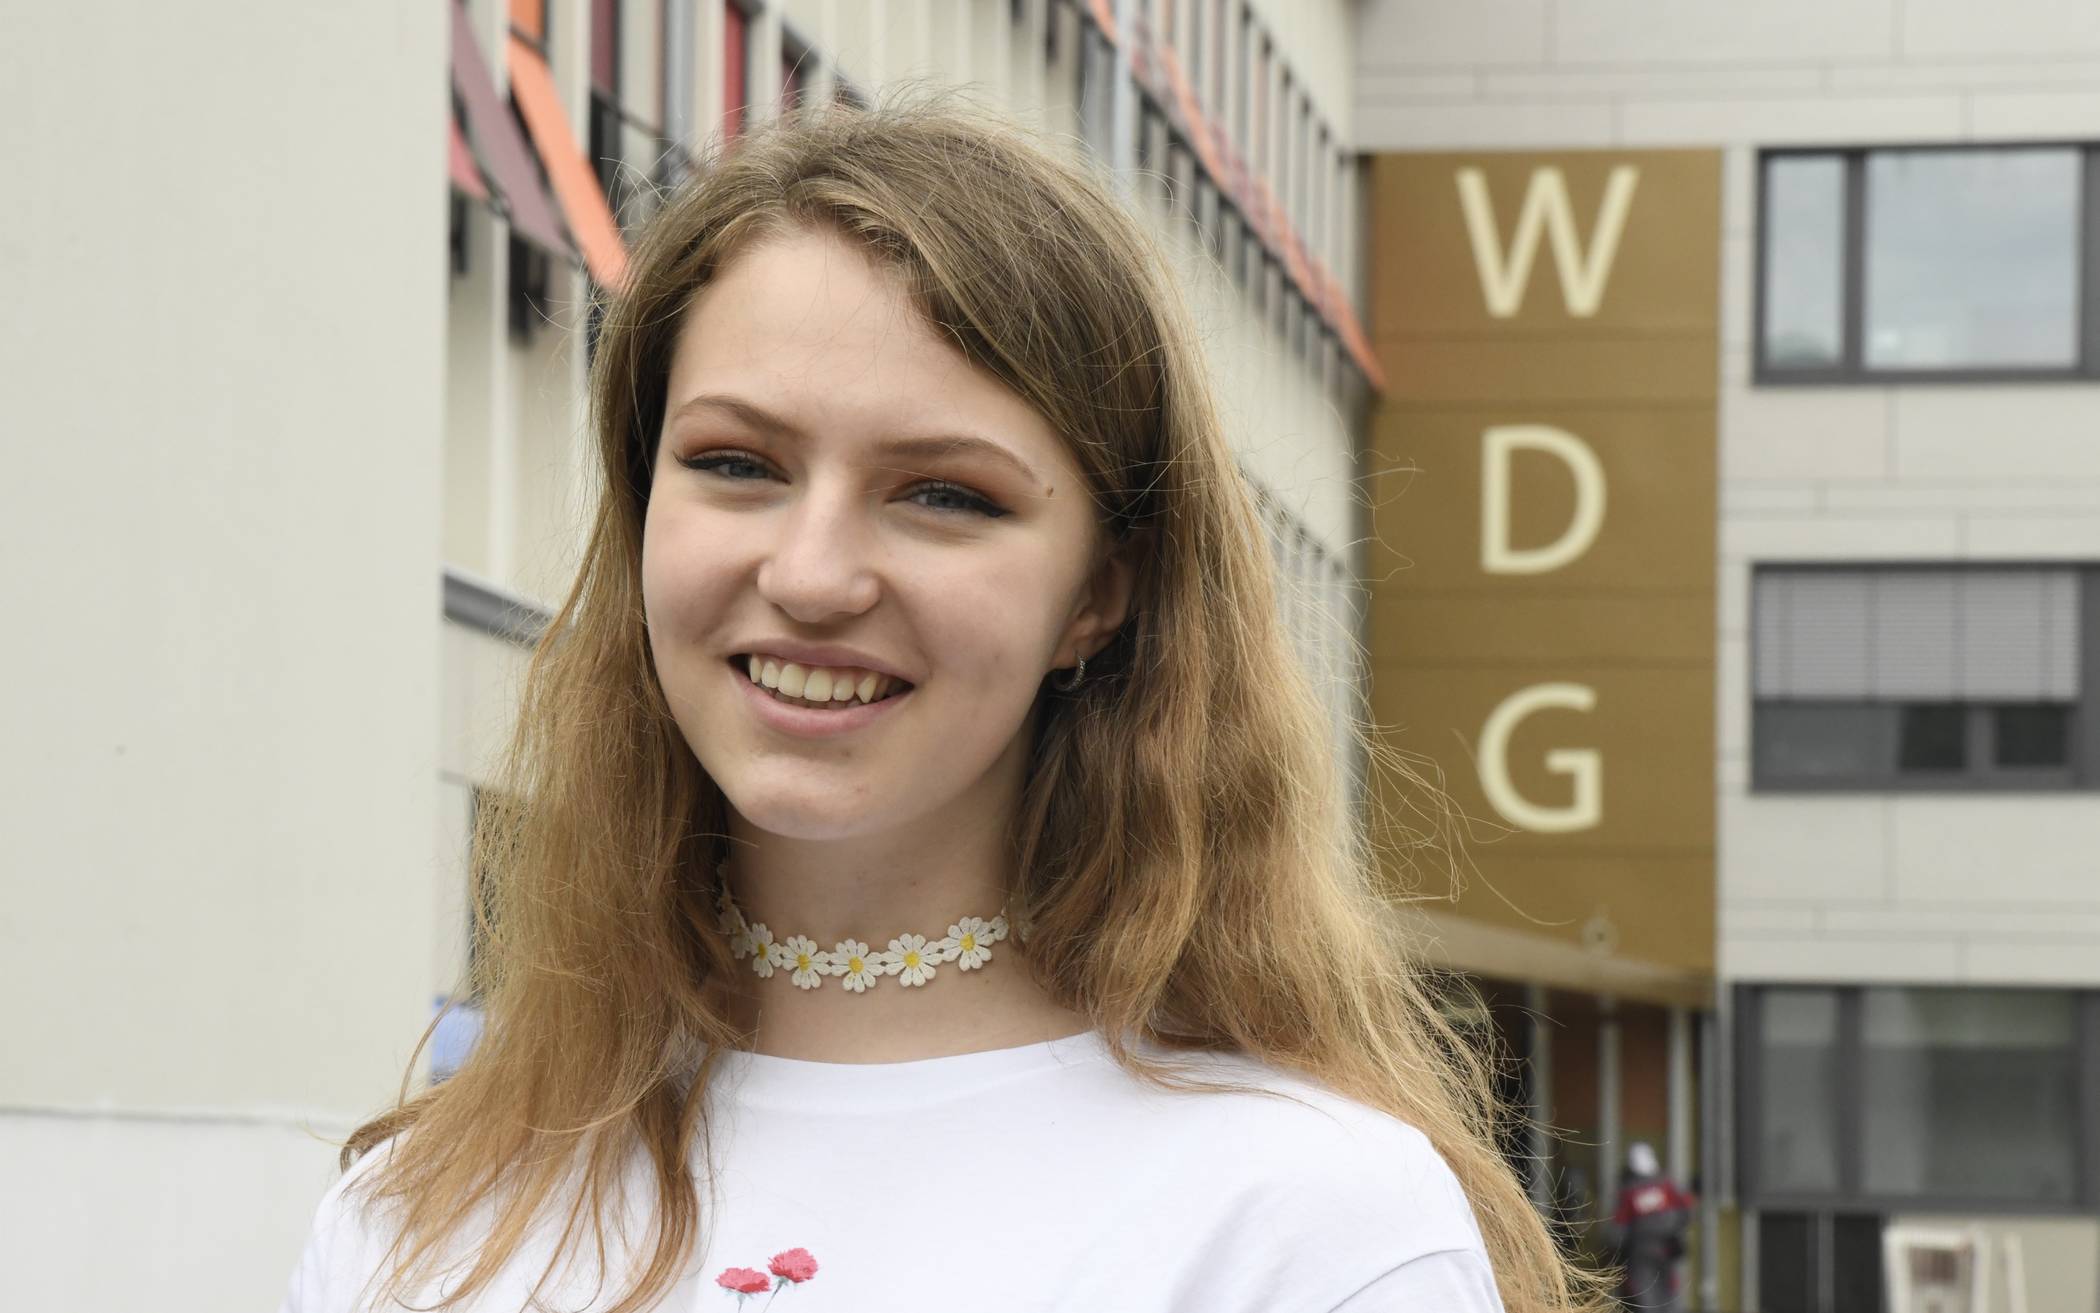  Marina Wereschaev ist 16 Jahre alt und hat die Leistungskurse Sozialwissenschaften und Englisch. Wenn sie nicht für die Schule lernt oder Geschäfte abwickelt, setzt sie sich im Jugendrat für junge Interessen in Wuppertal ein. 